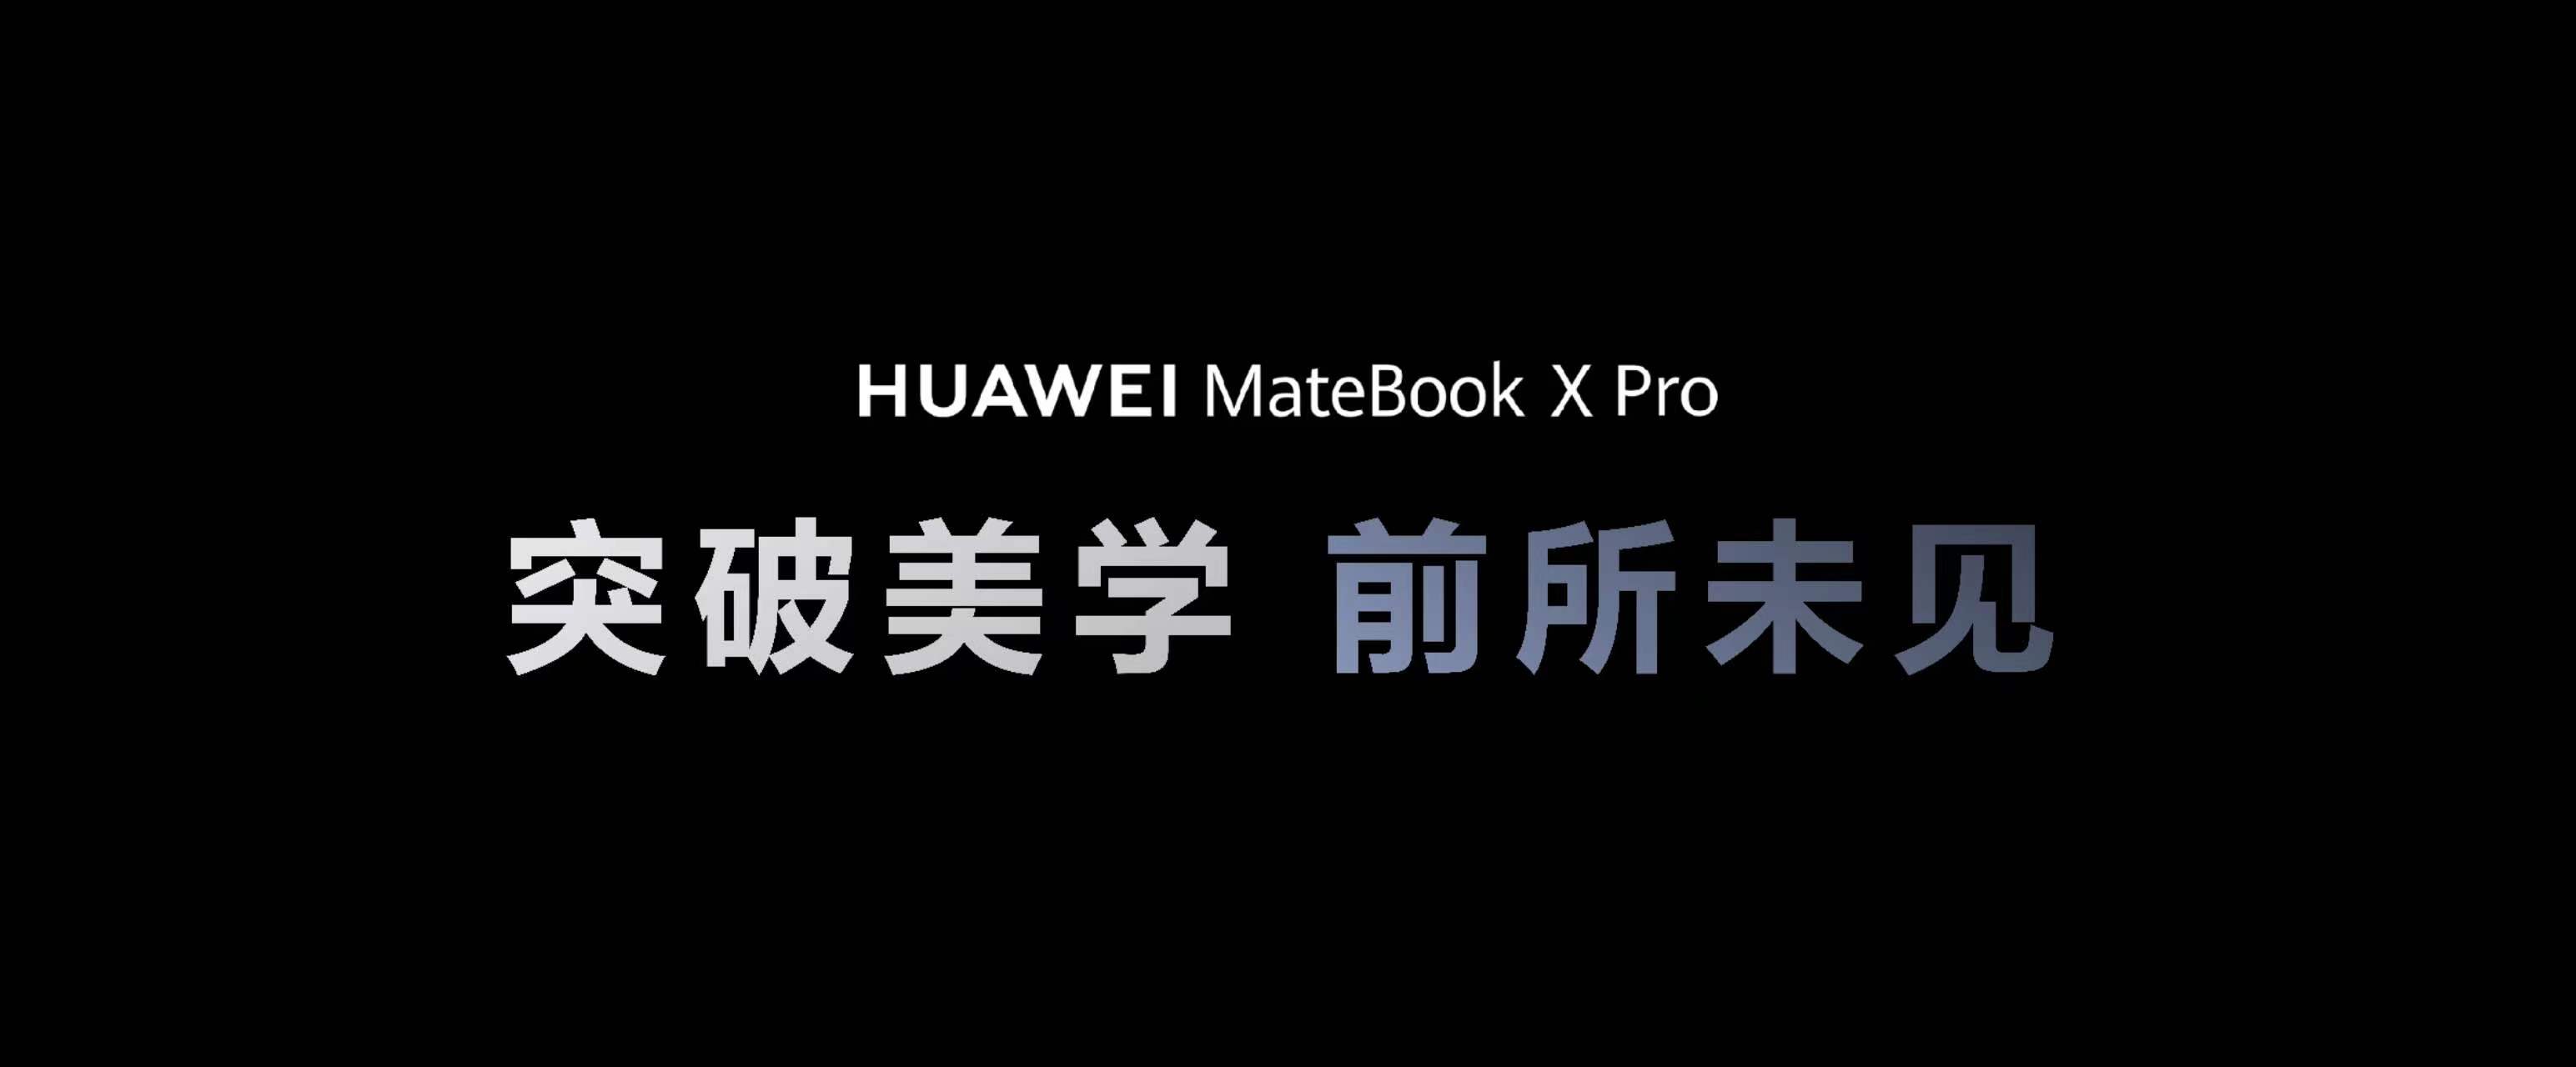 HUAWEI MateBook X Pro配置